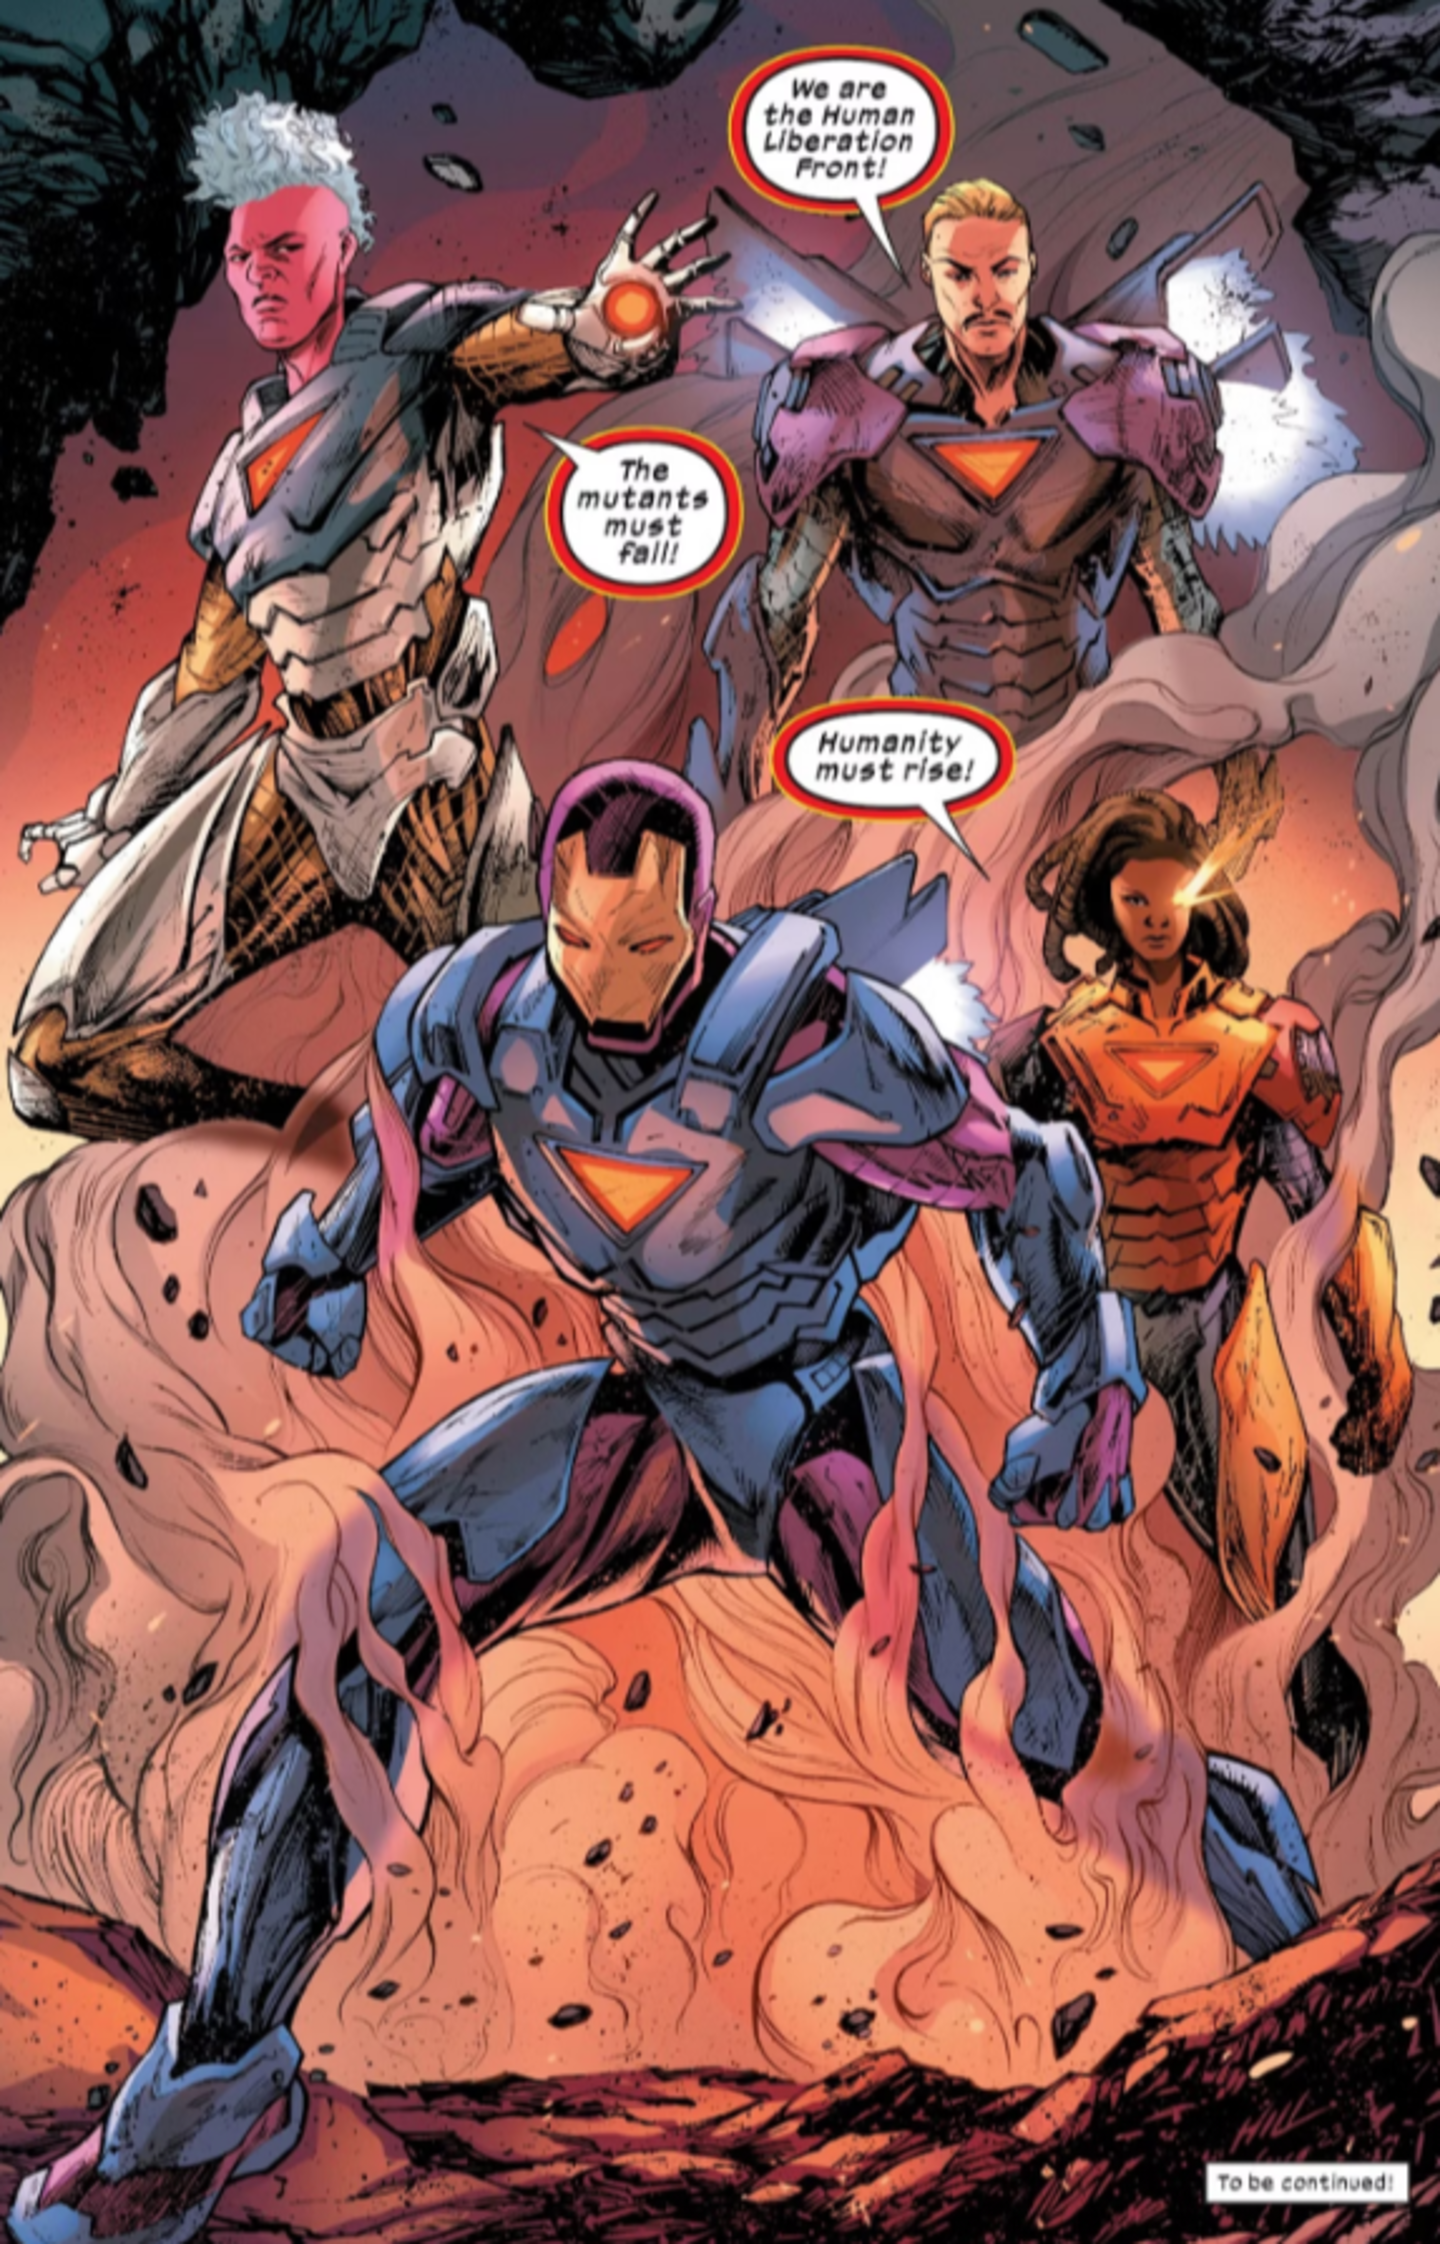 La nueva armadura de Iron Man revela todo su potencial y se convierte en una amenaza para los X-Men